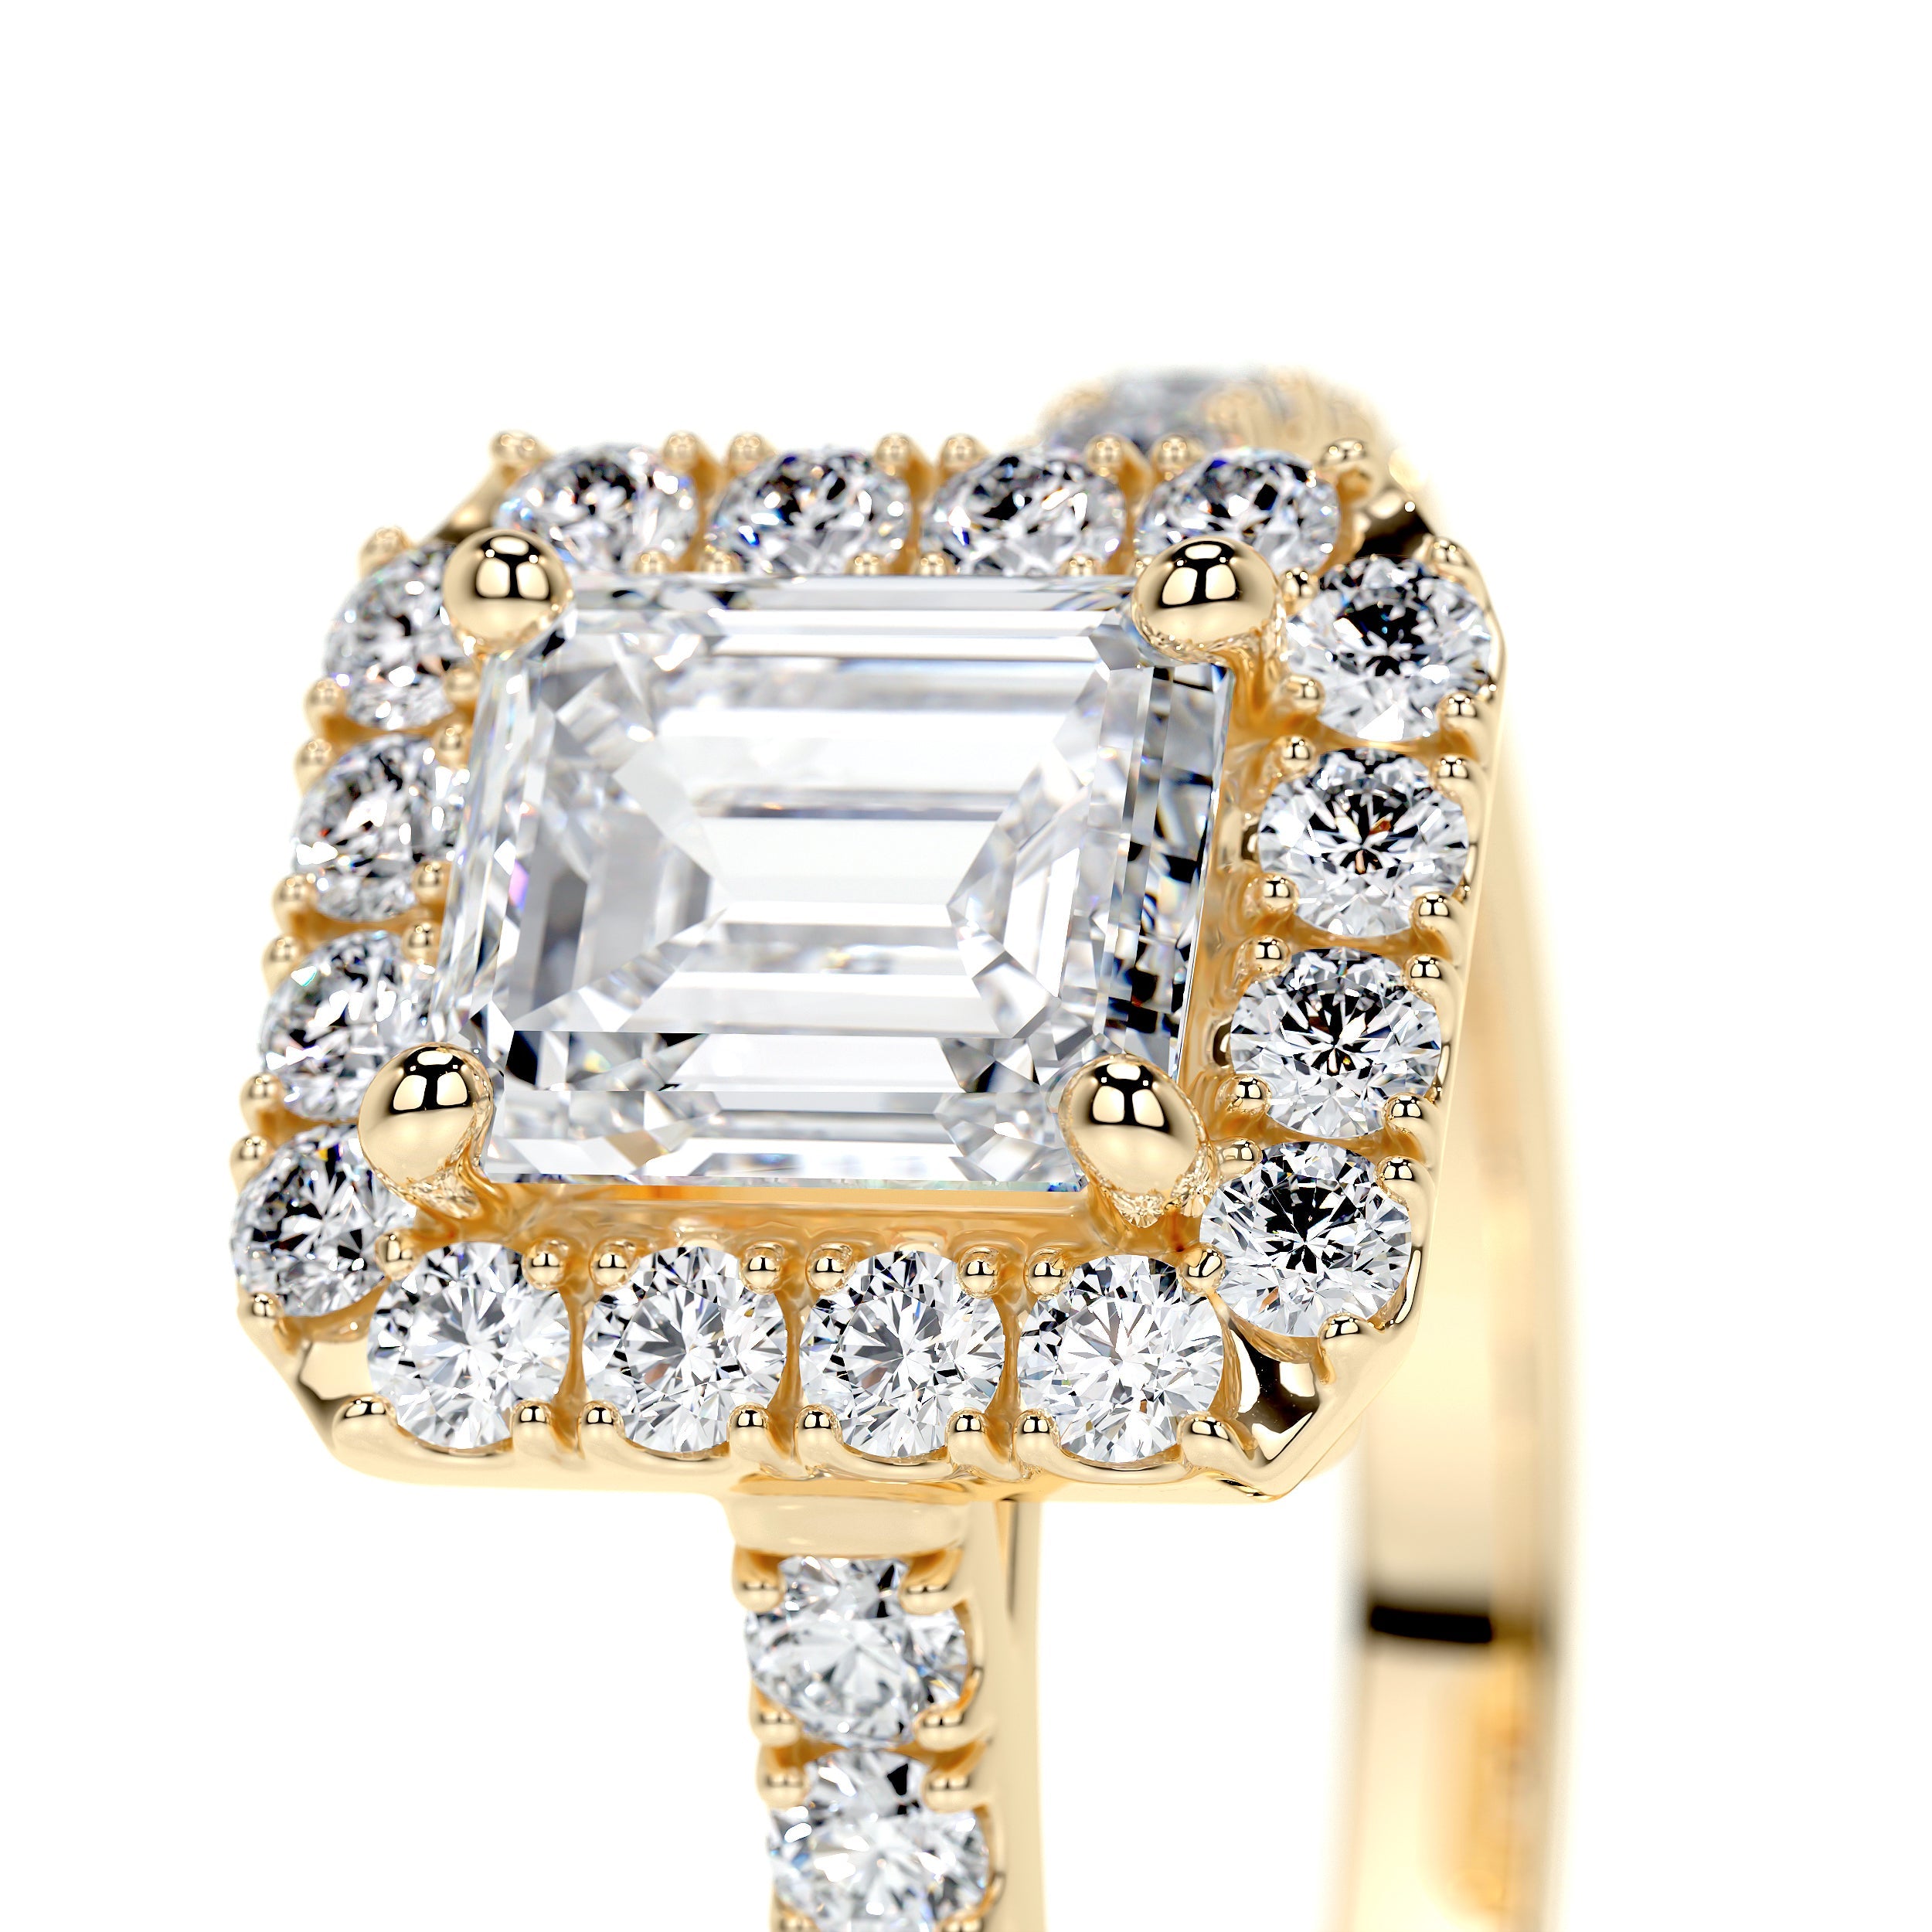 Zoey Lab Grown Diamond Ring   (1.5 Carat) -18K Yellow Gold